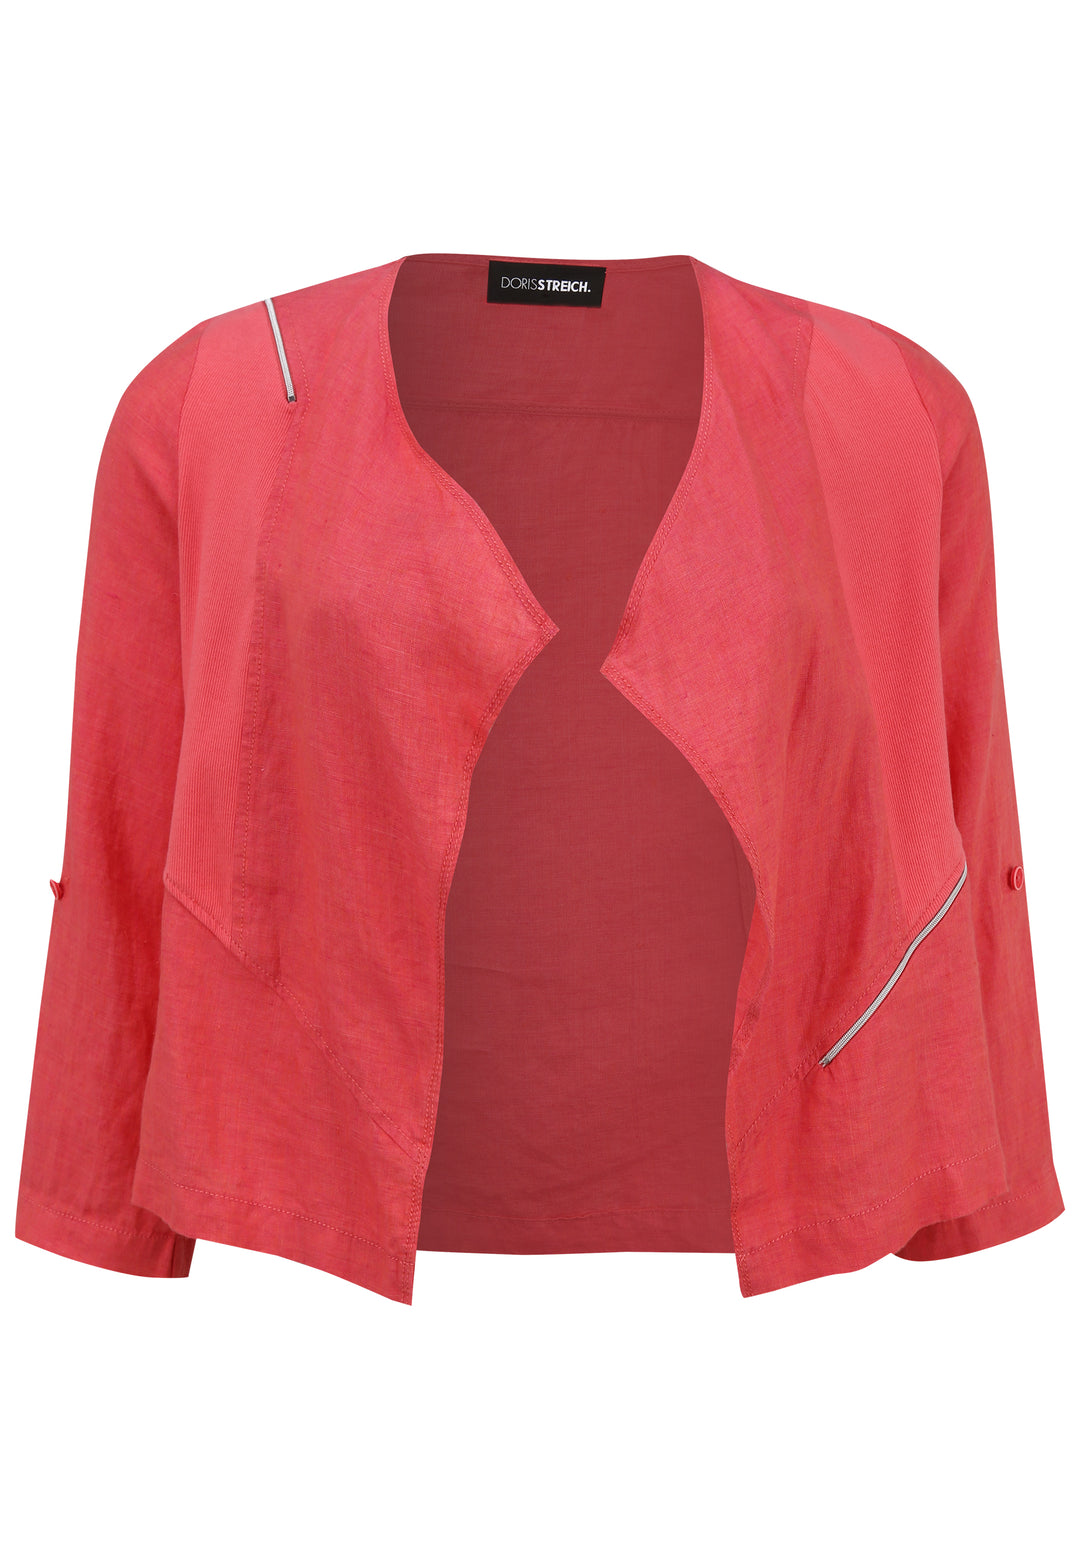 roze linnen vest - doris streich - 343135 - grote maten - dameskleding - kledingwinkel - herent - leuven